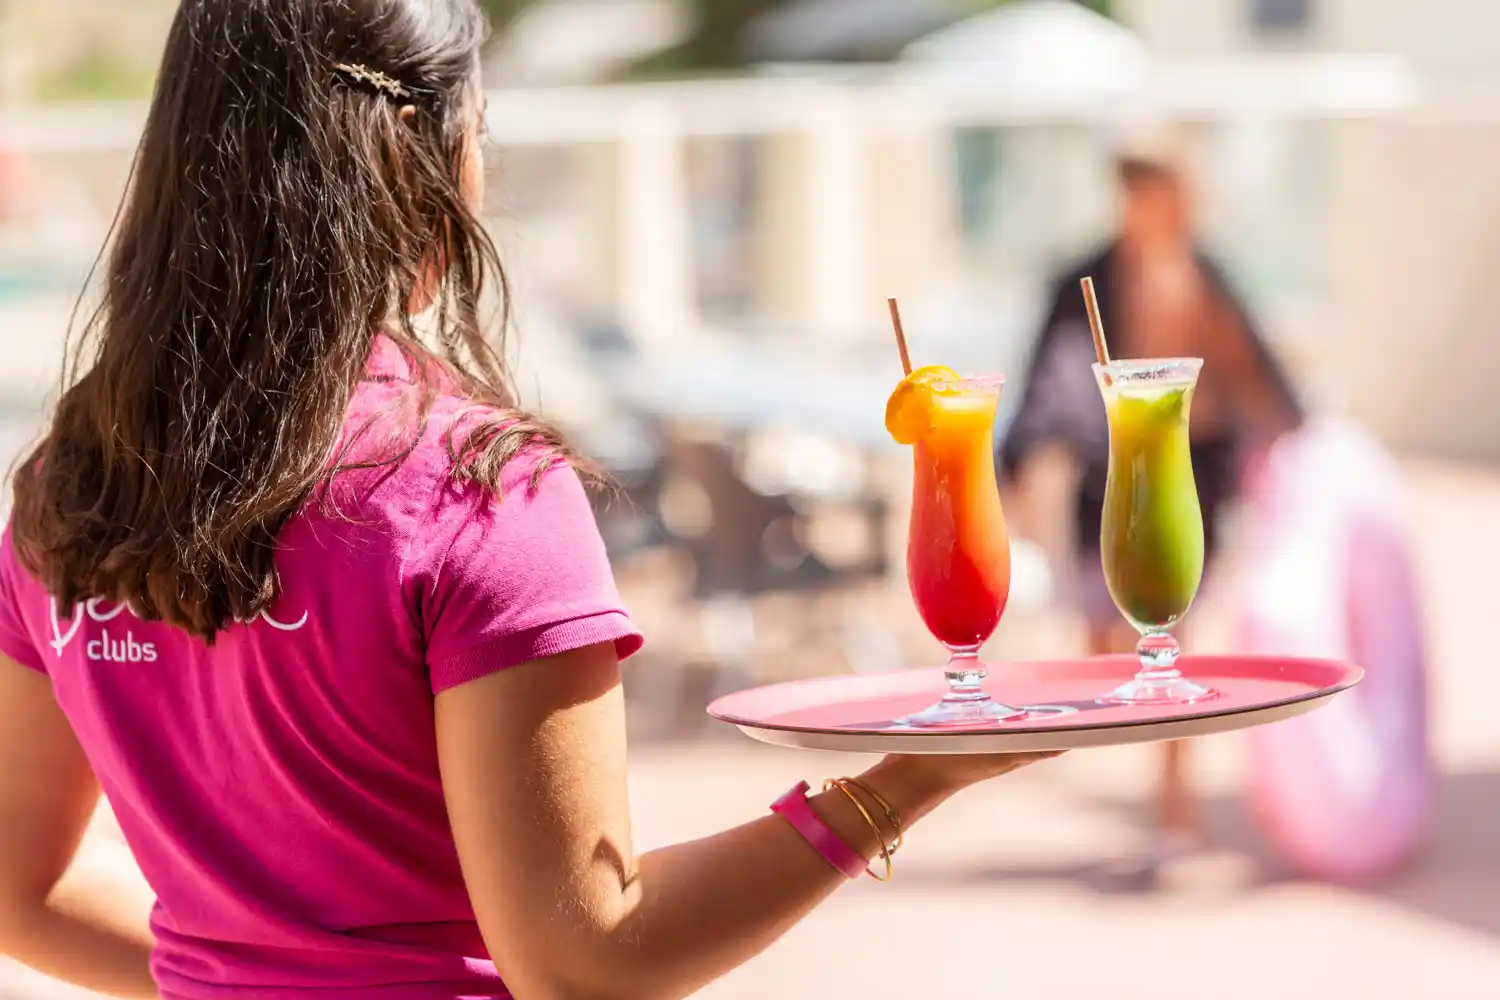 Une serveuse s'avance avec un plateau et deux verres à cocktail dans un bar. Photographie de mise en situation pour un hôtel